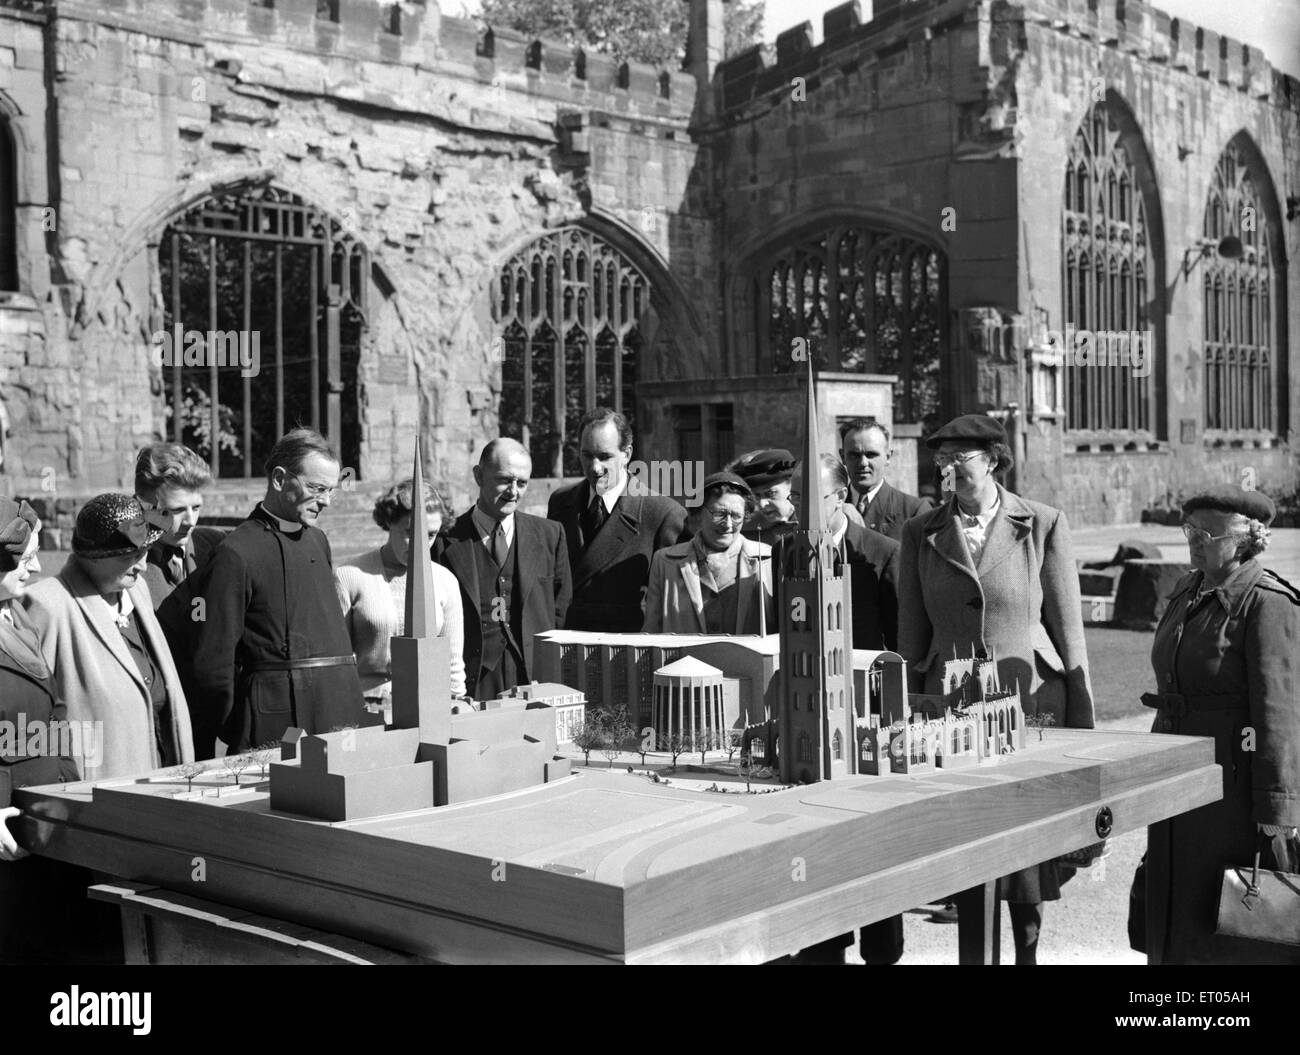 Un modello di Sir Basil Spence nuova cattedrale di Coventry, West Midlands (ex Warwickshire) viene visualizzato nelle rovine della vecchia cattedrale medievale che è stato distrutto dalla German Airforce nel blitz di novembre 1940. Circa 1952 Foto Stock